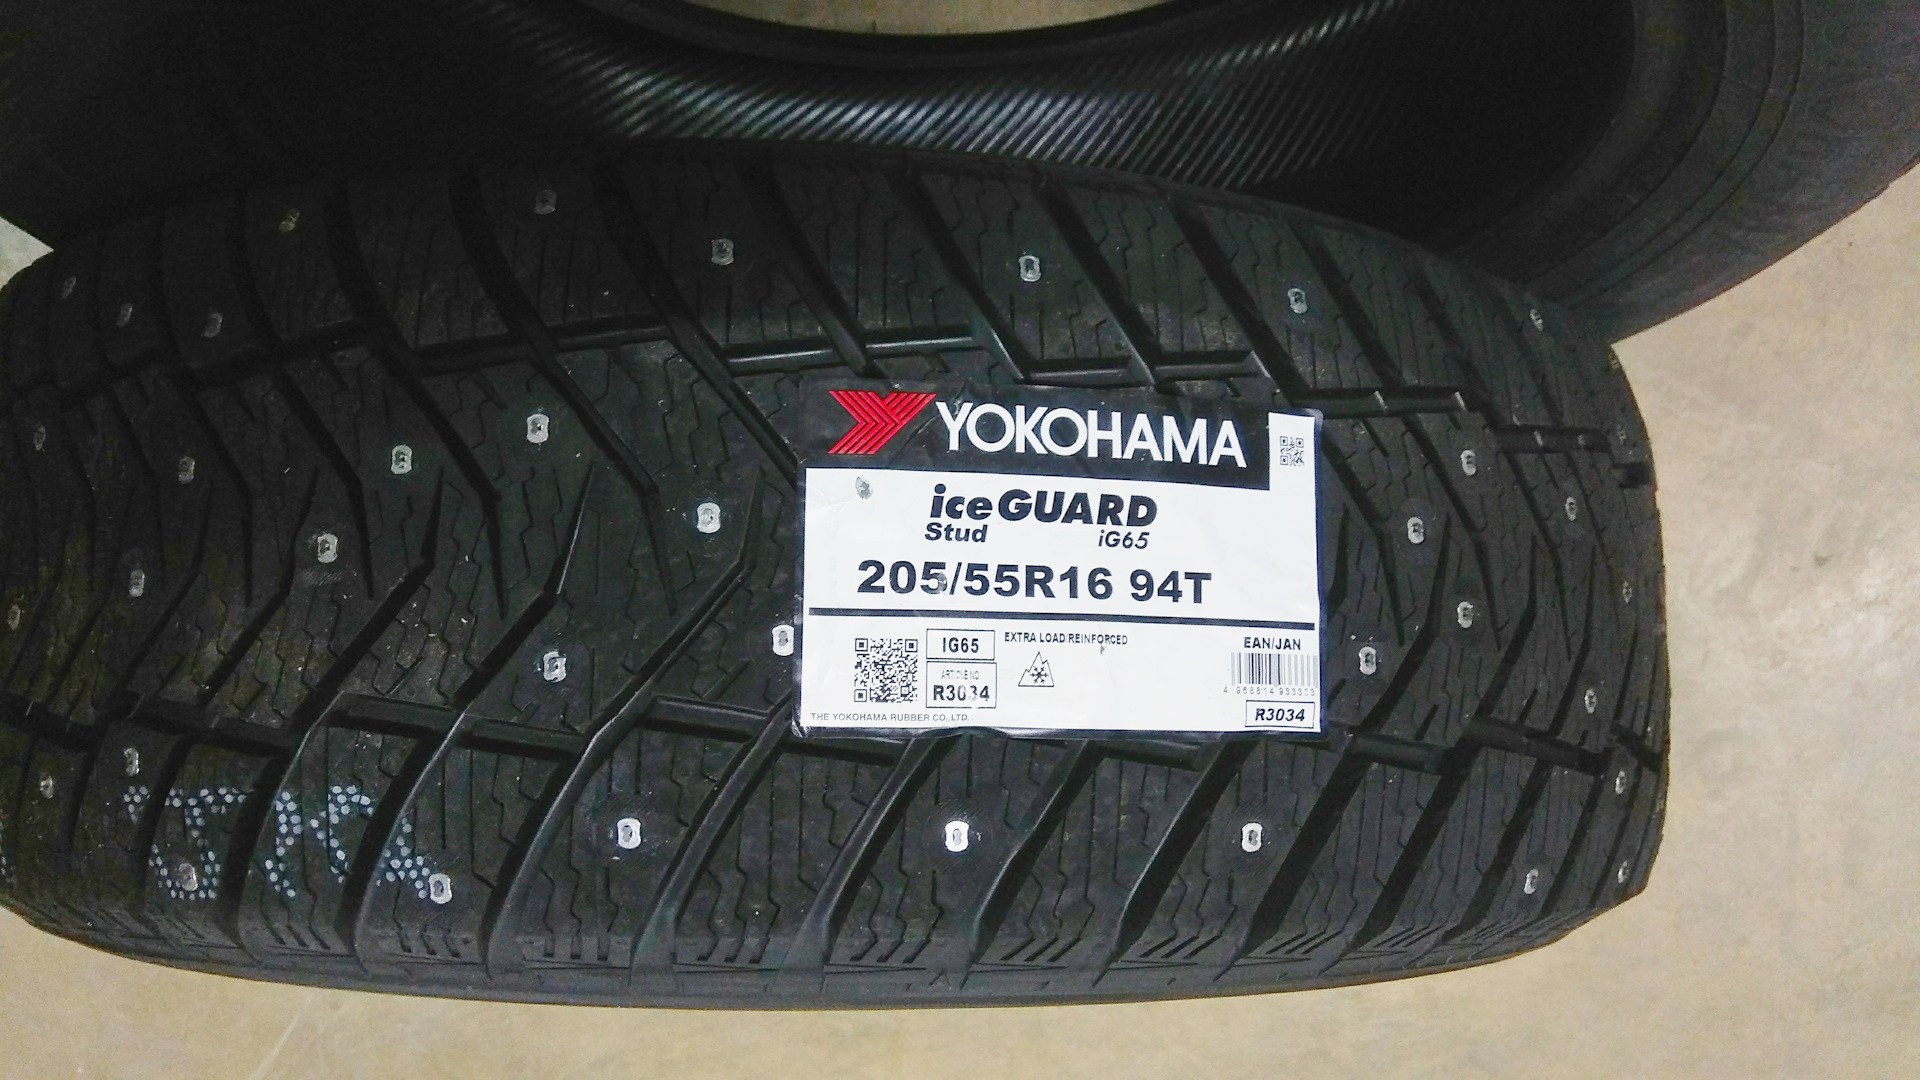 Йокогама айс гуард 65. Yokohama Ice Guard ig65. Yokohama Ice Guard ig55 215/65 r16. Зимние шины Yokohama Ice Guard ig65. Yokohama Ice Guard ig65 205/55 r16 94t.